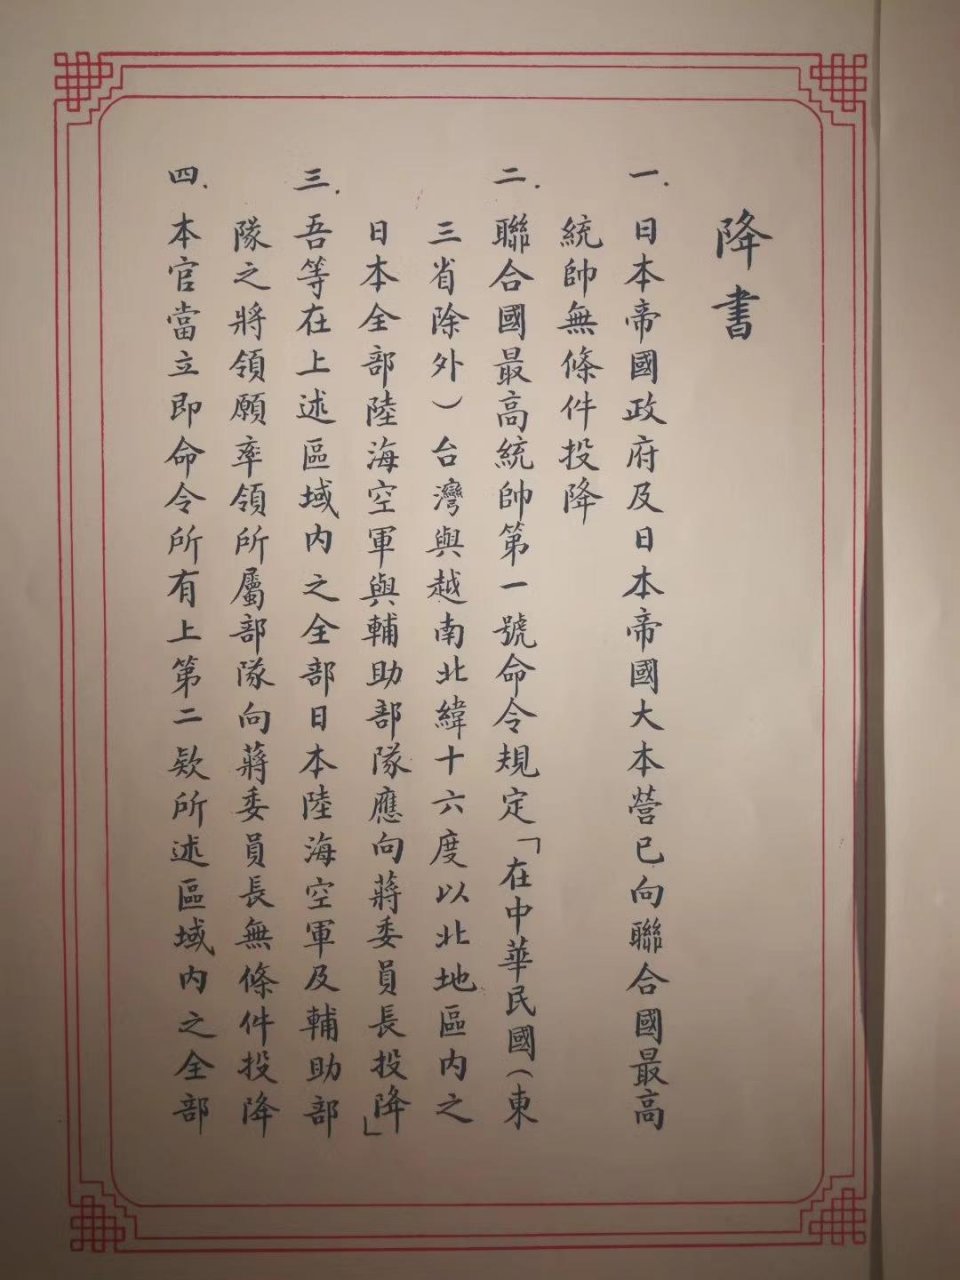 台湾中正纪念堂最值得看的文物日本战败投降书一处内容让人气愤